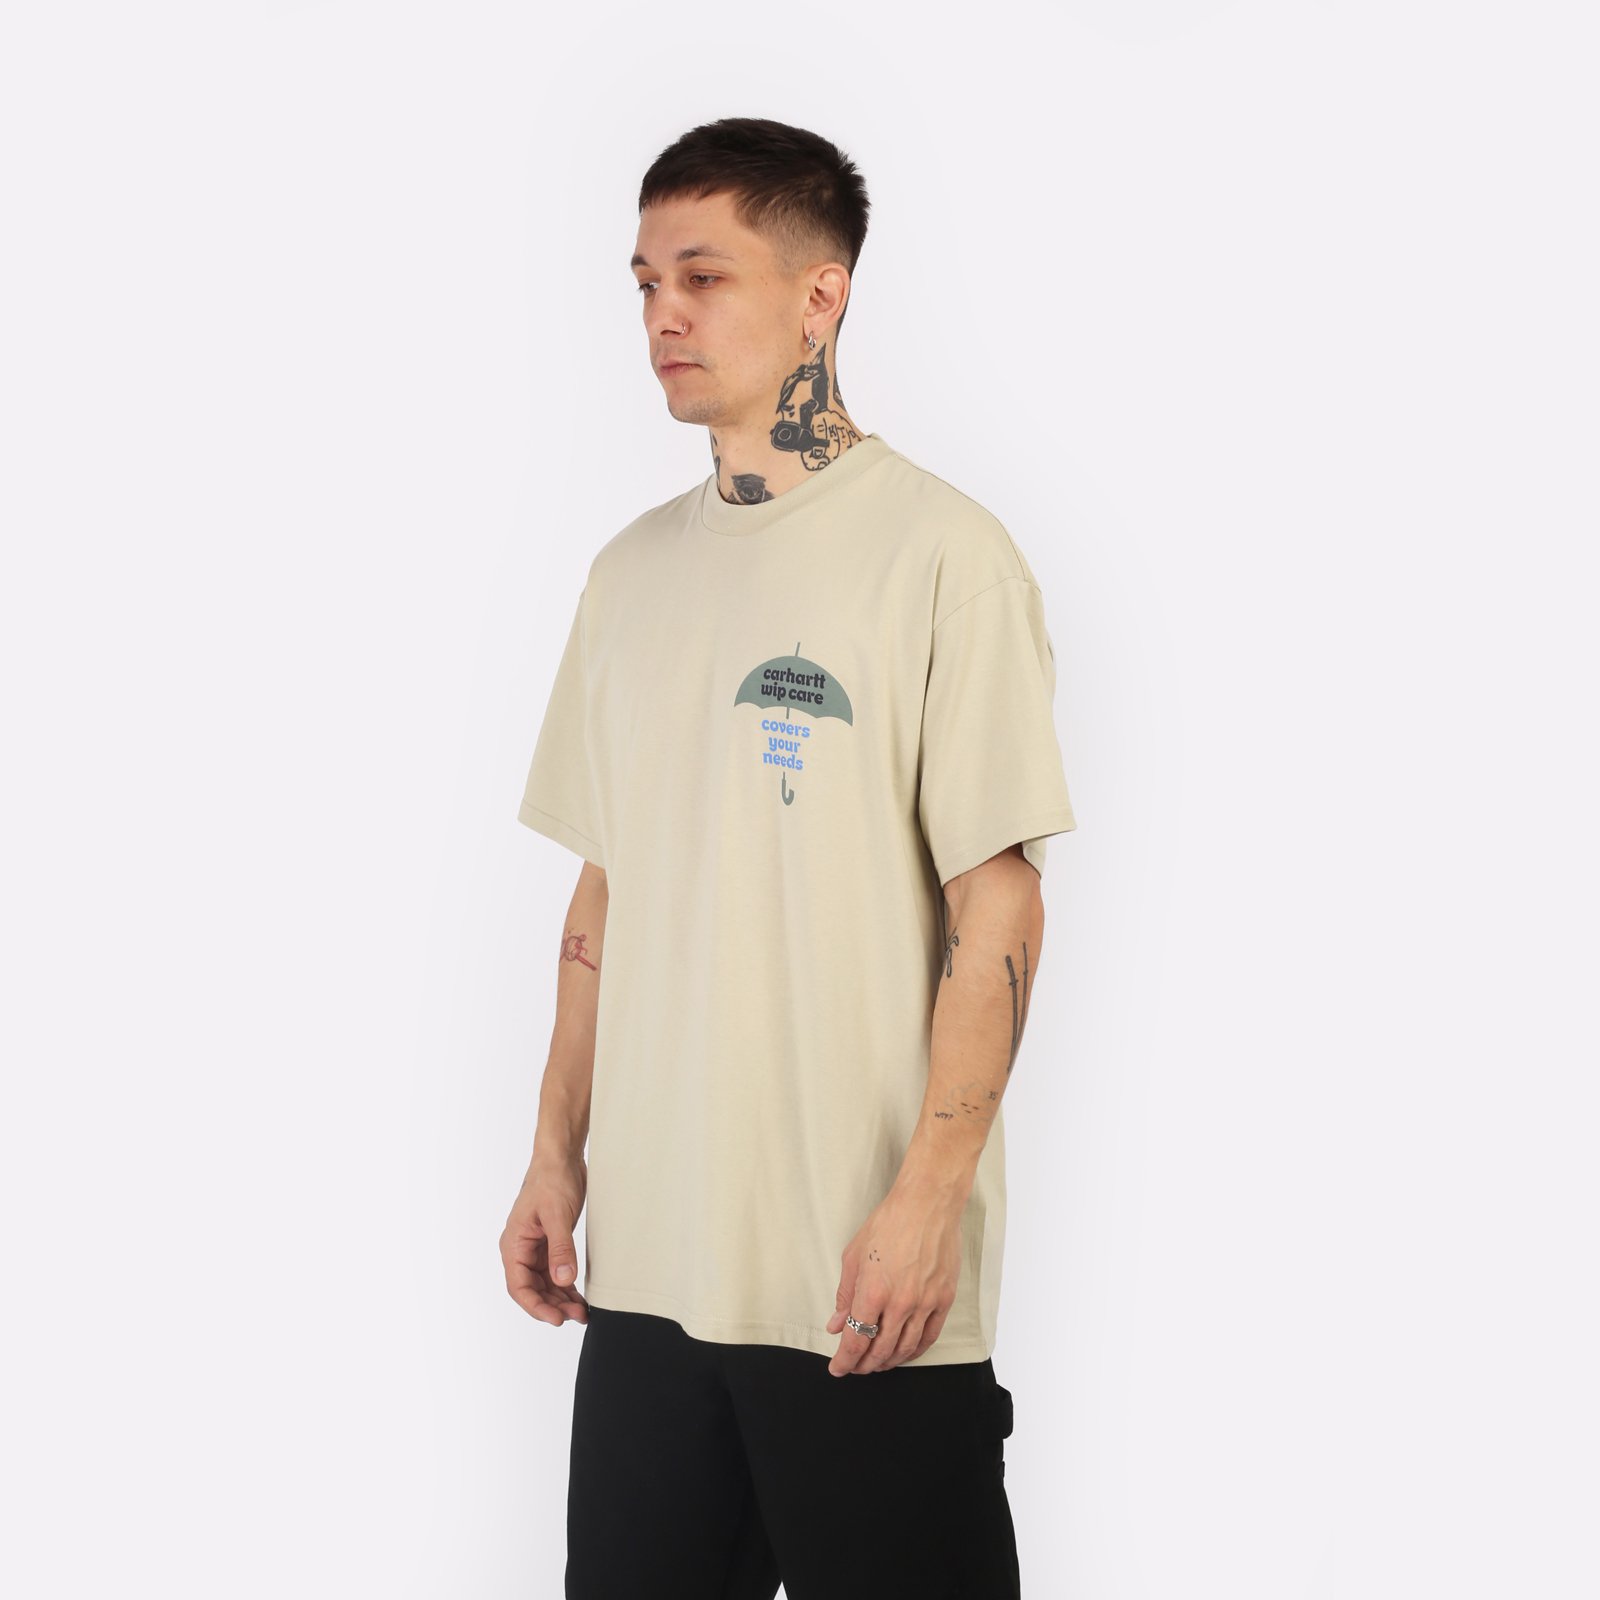 мужская бежевая футболка Carhartt WIP S/S Covers T-Shirt I033165-beryl - цена, описание, фото 3